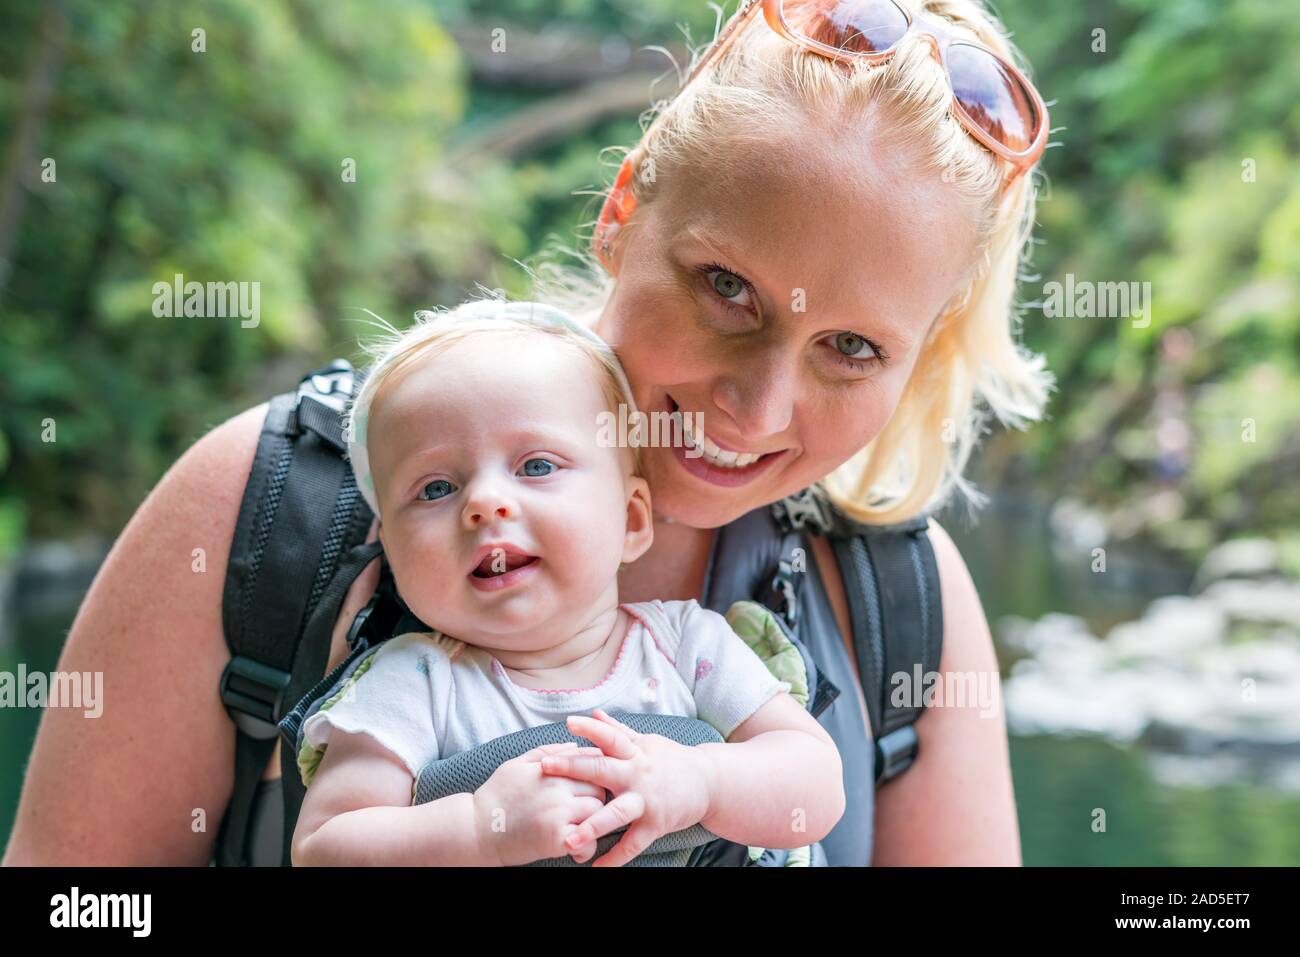 Glücklich lächelnde Mutter mit Baby Kind in der Schlinge, ergonomische Babytrage. Man draußen in der Natur im Sommer. Stockfoto